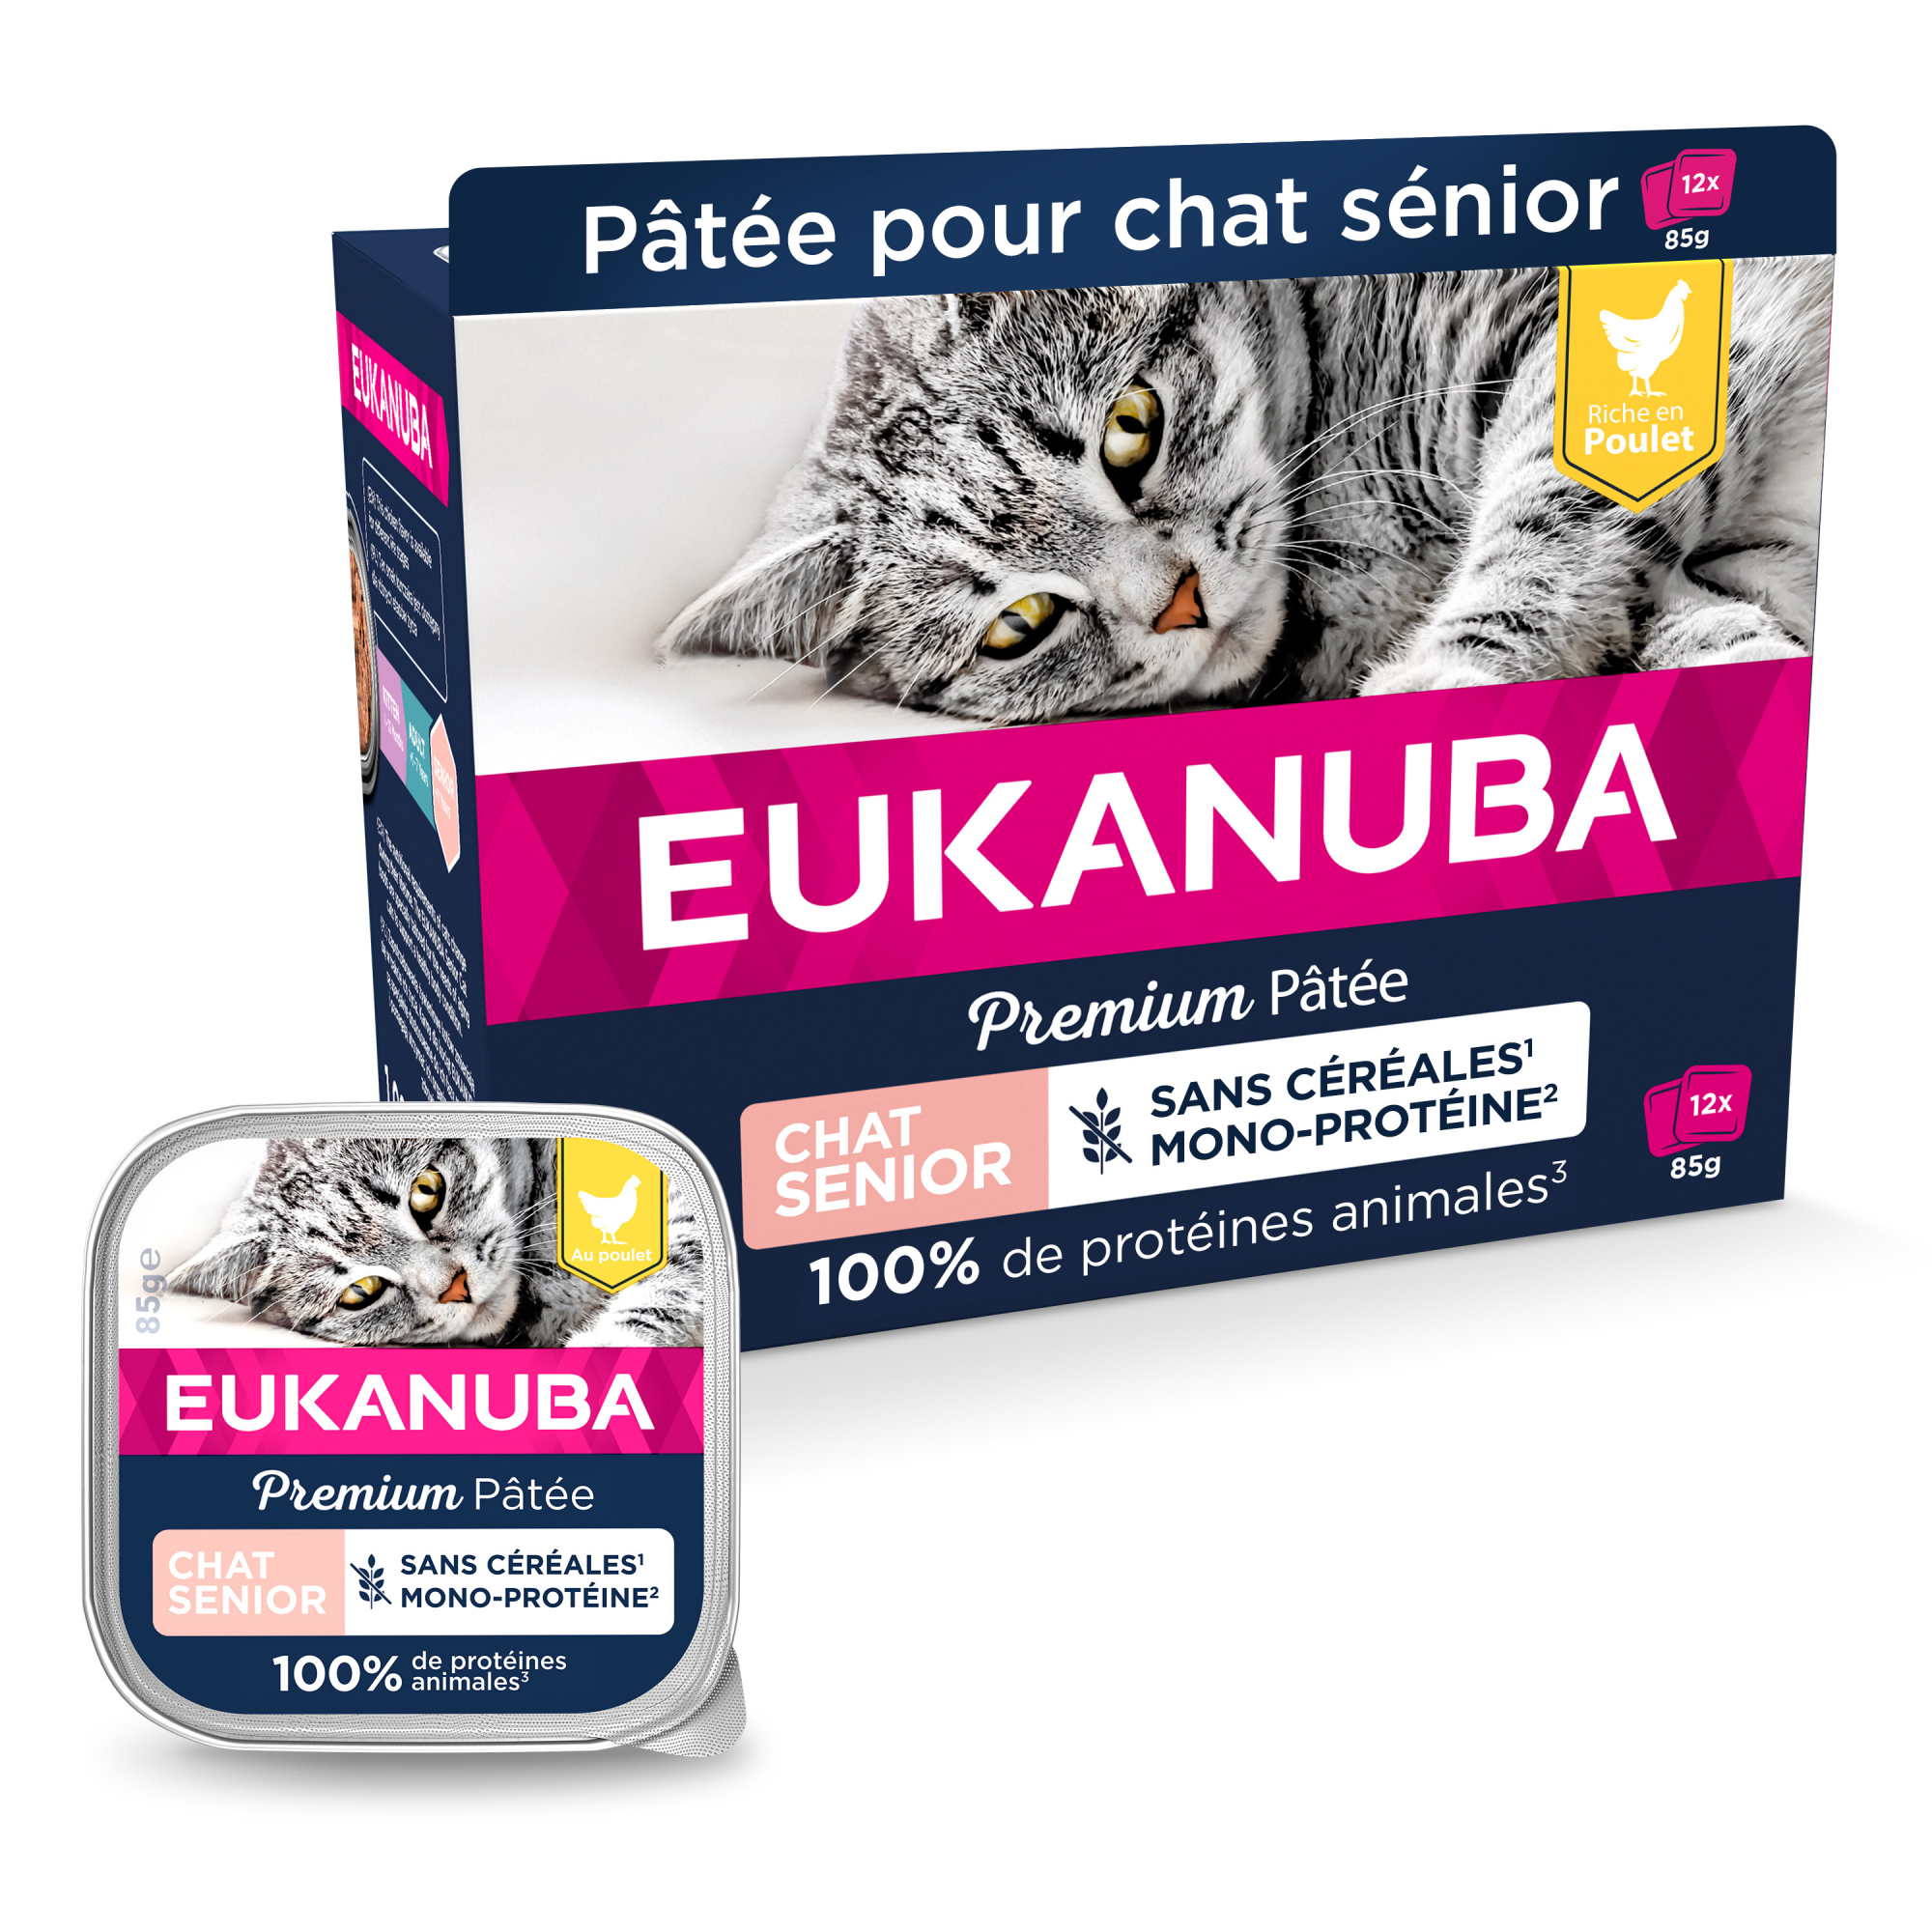 Eukanuba pâtée sans céréales mono-protéine au poulet pour chat senior